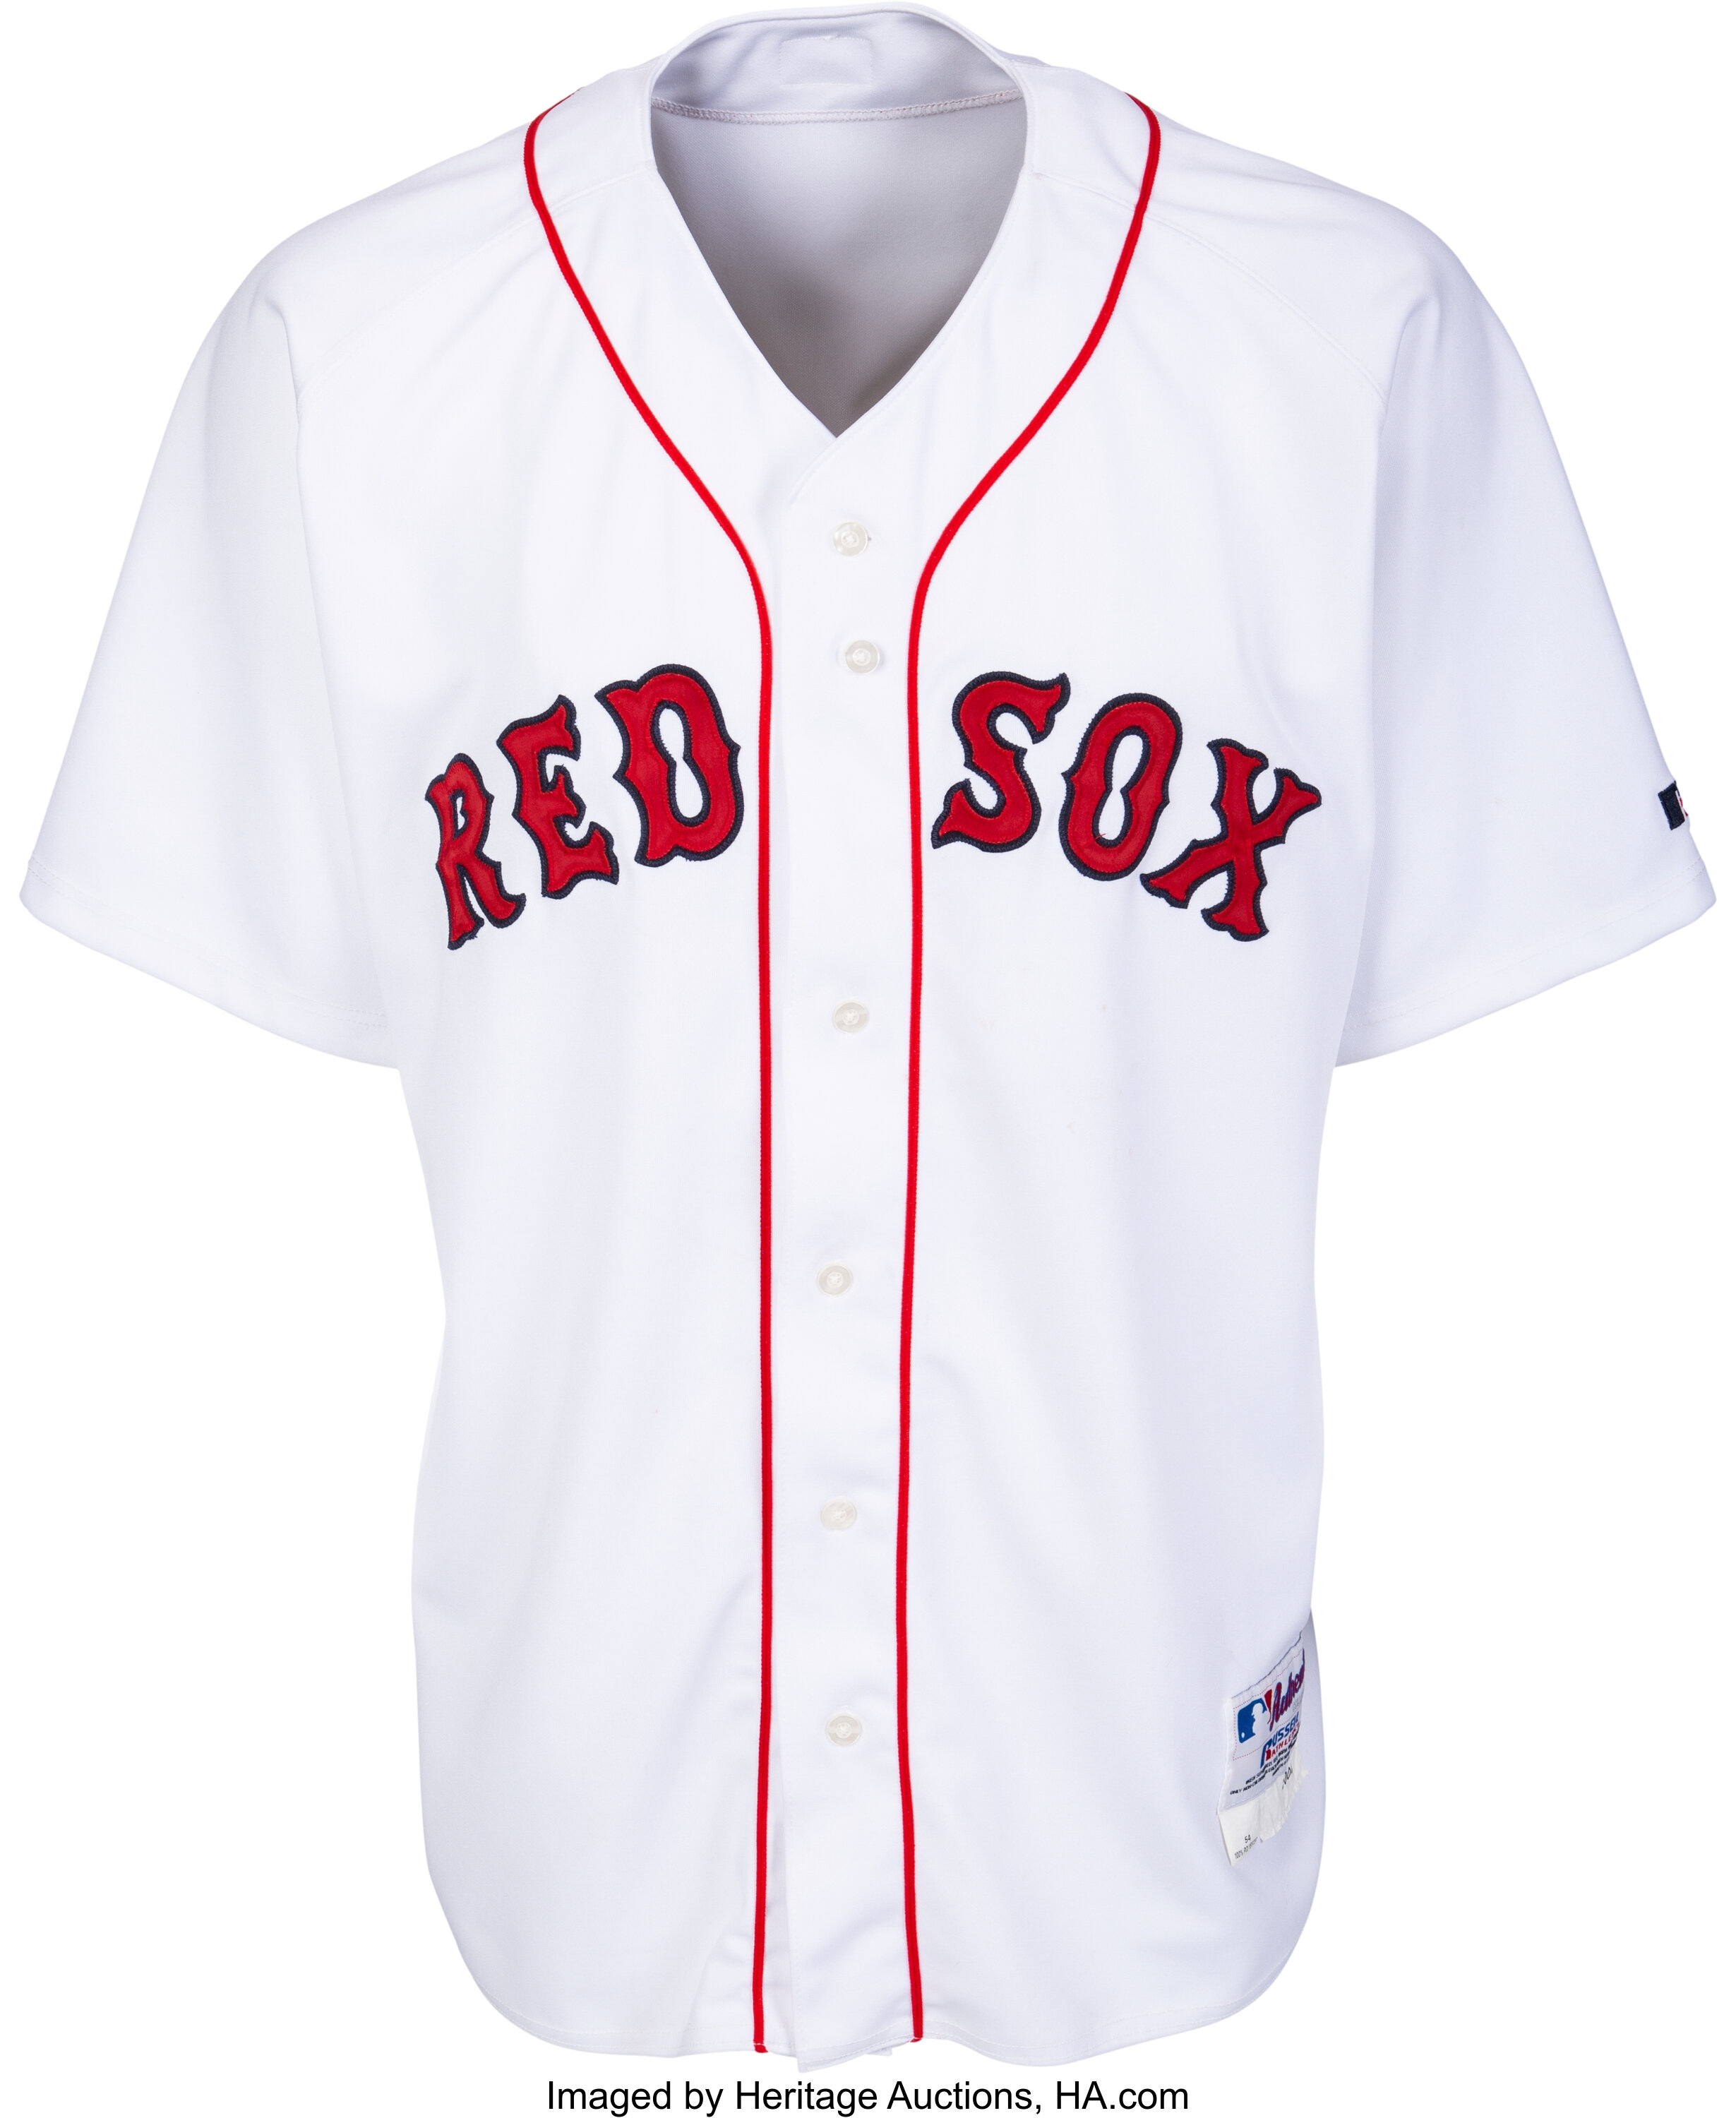 Manny Ramirez and the Boston Red Sox - Bearport Publishing